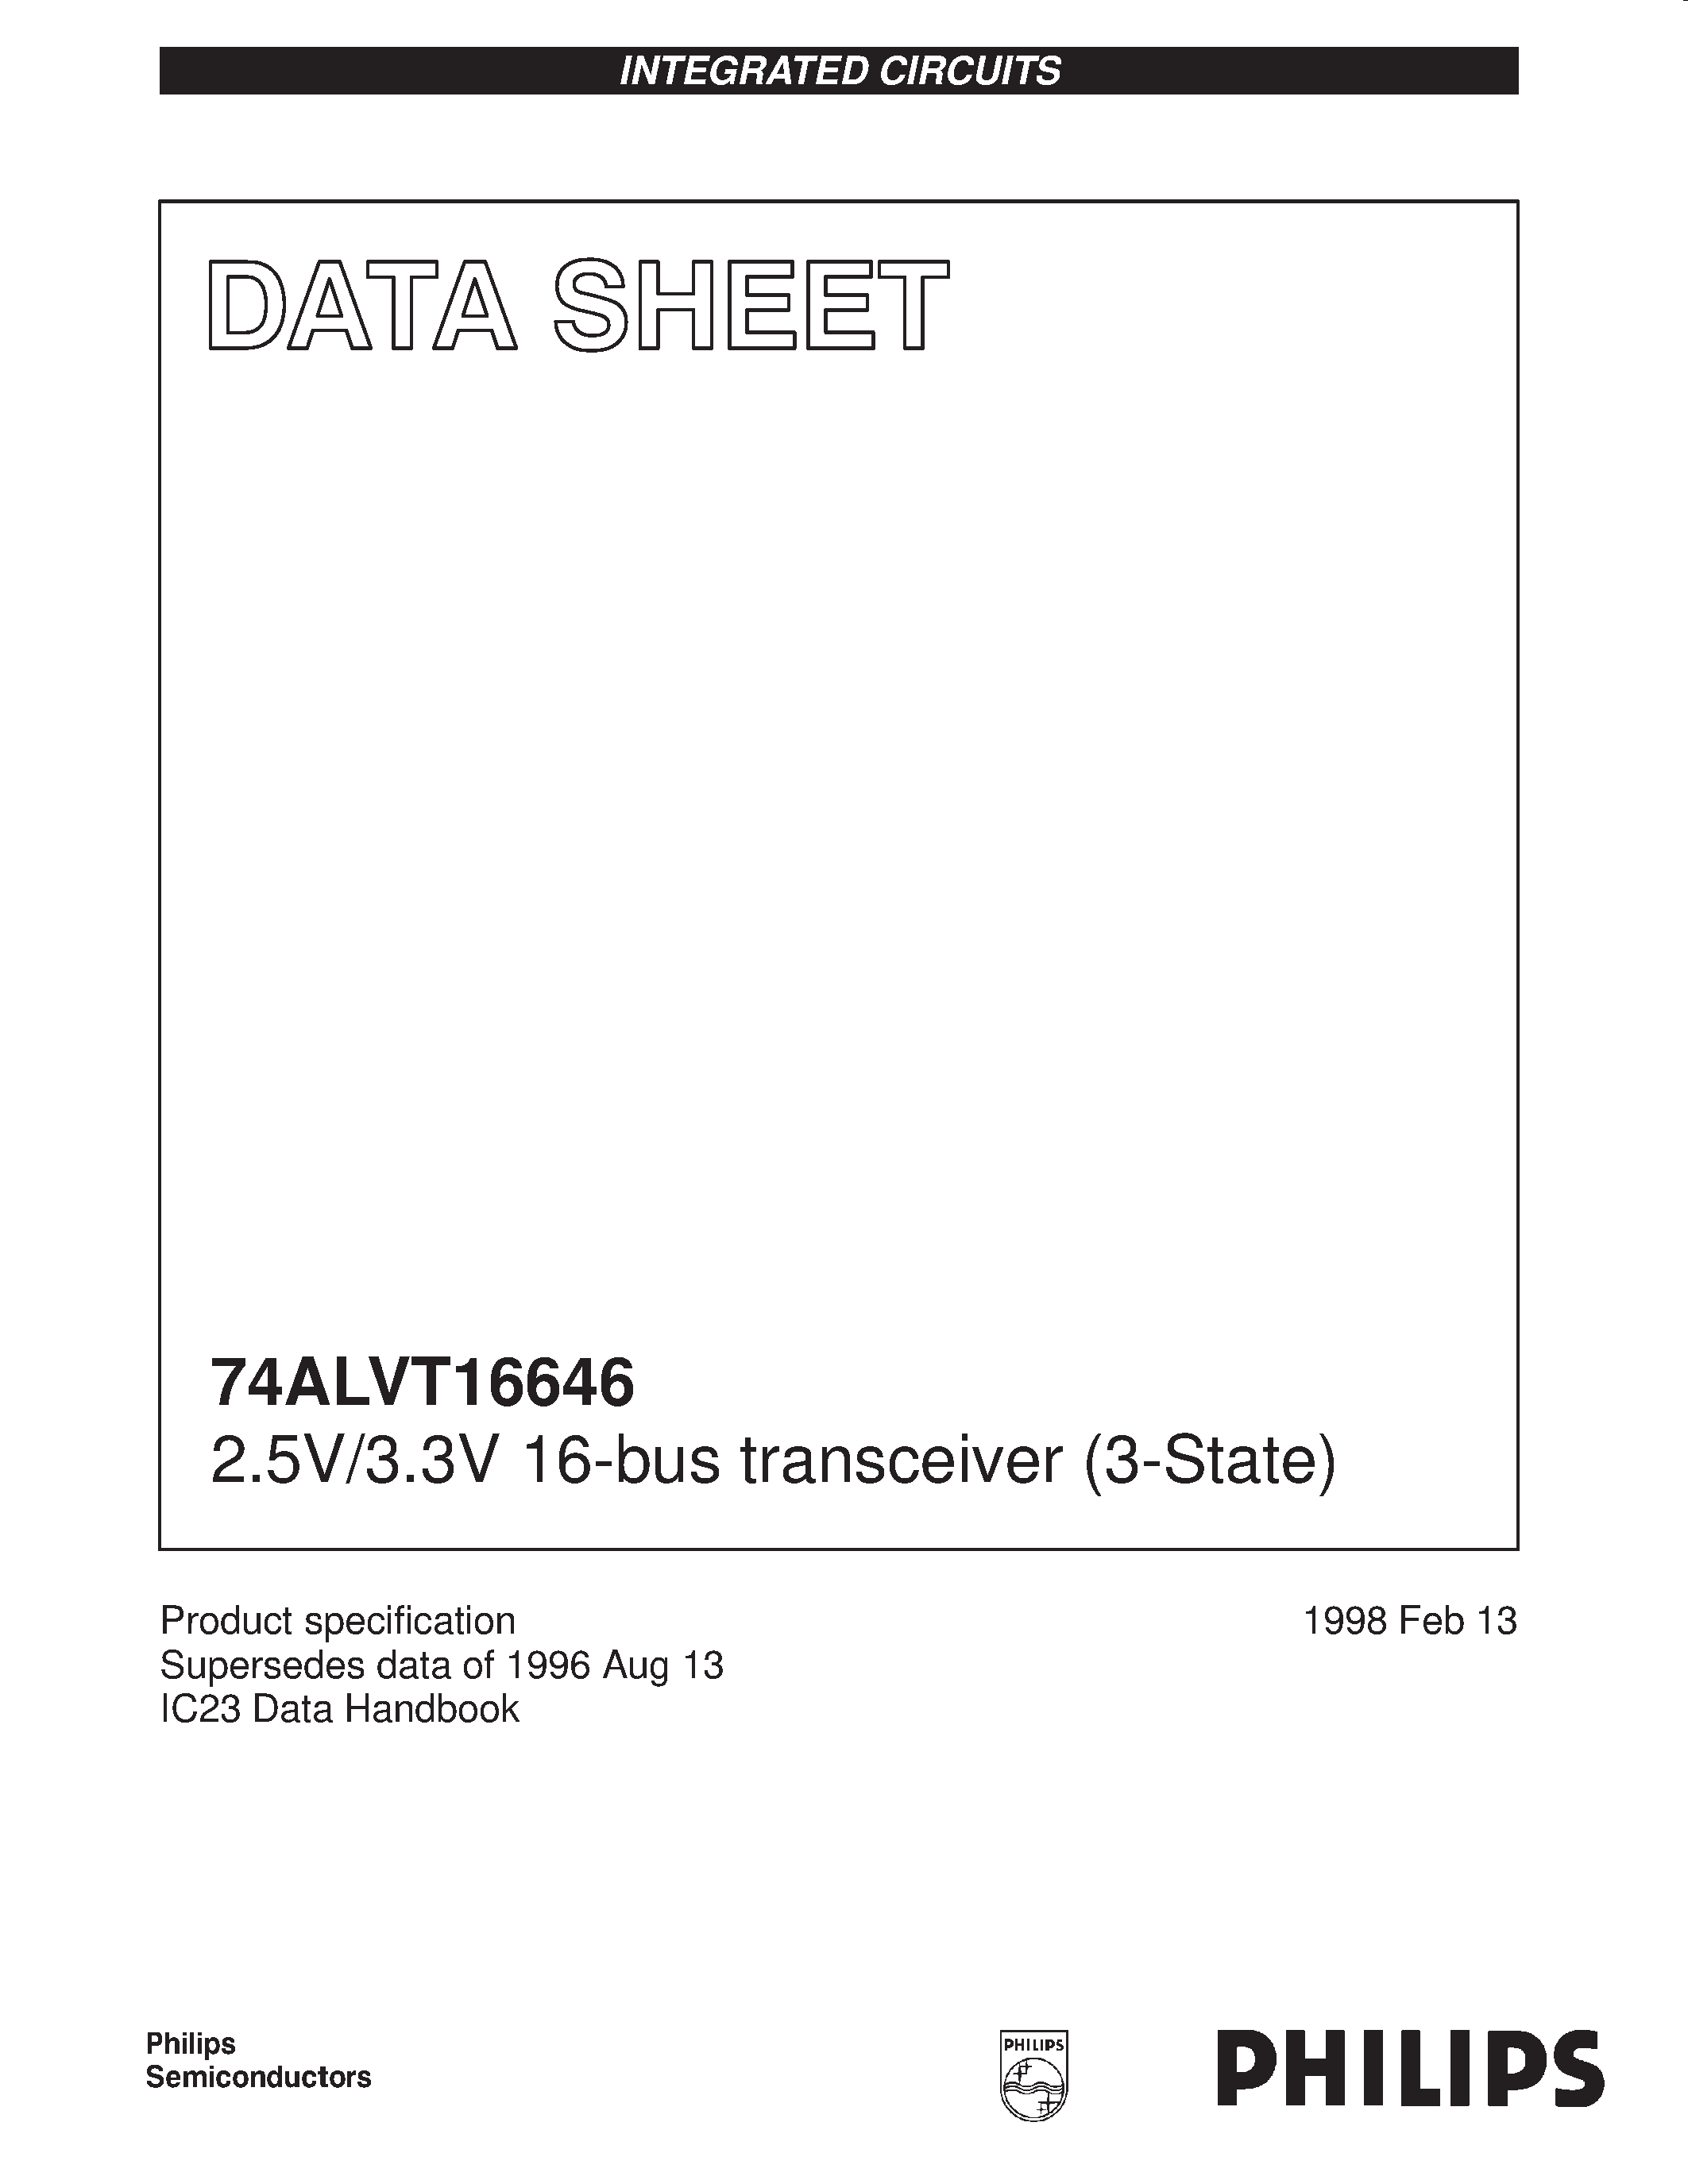 Даташит 74ALVT16646DGG - 2.5V/3.3V 16-bus transceiver 3-State страница 1